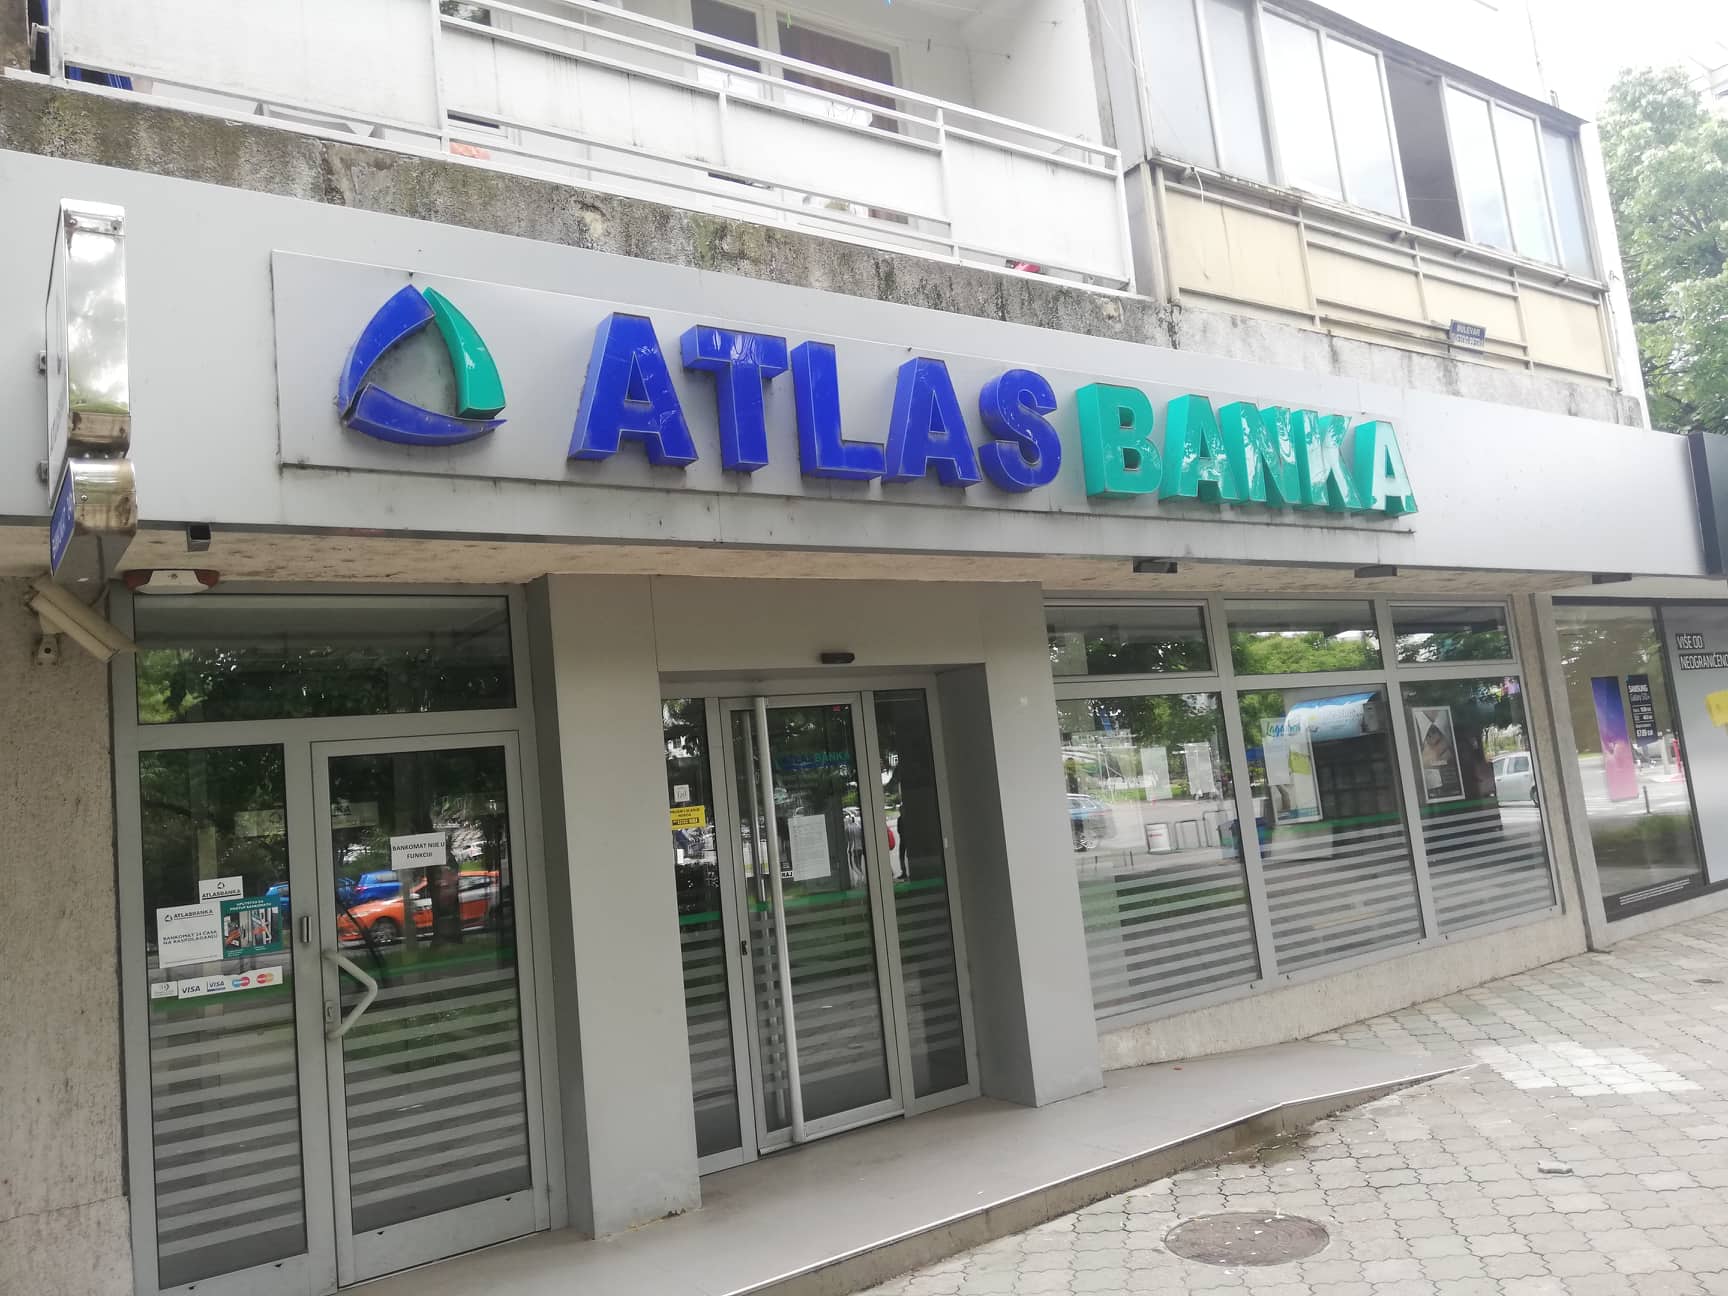 Sud prihvatio da bivši izvršni direktor Atlas banke bude svjedok saradnik